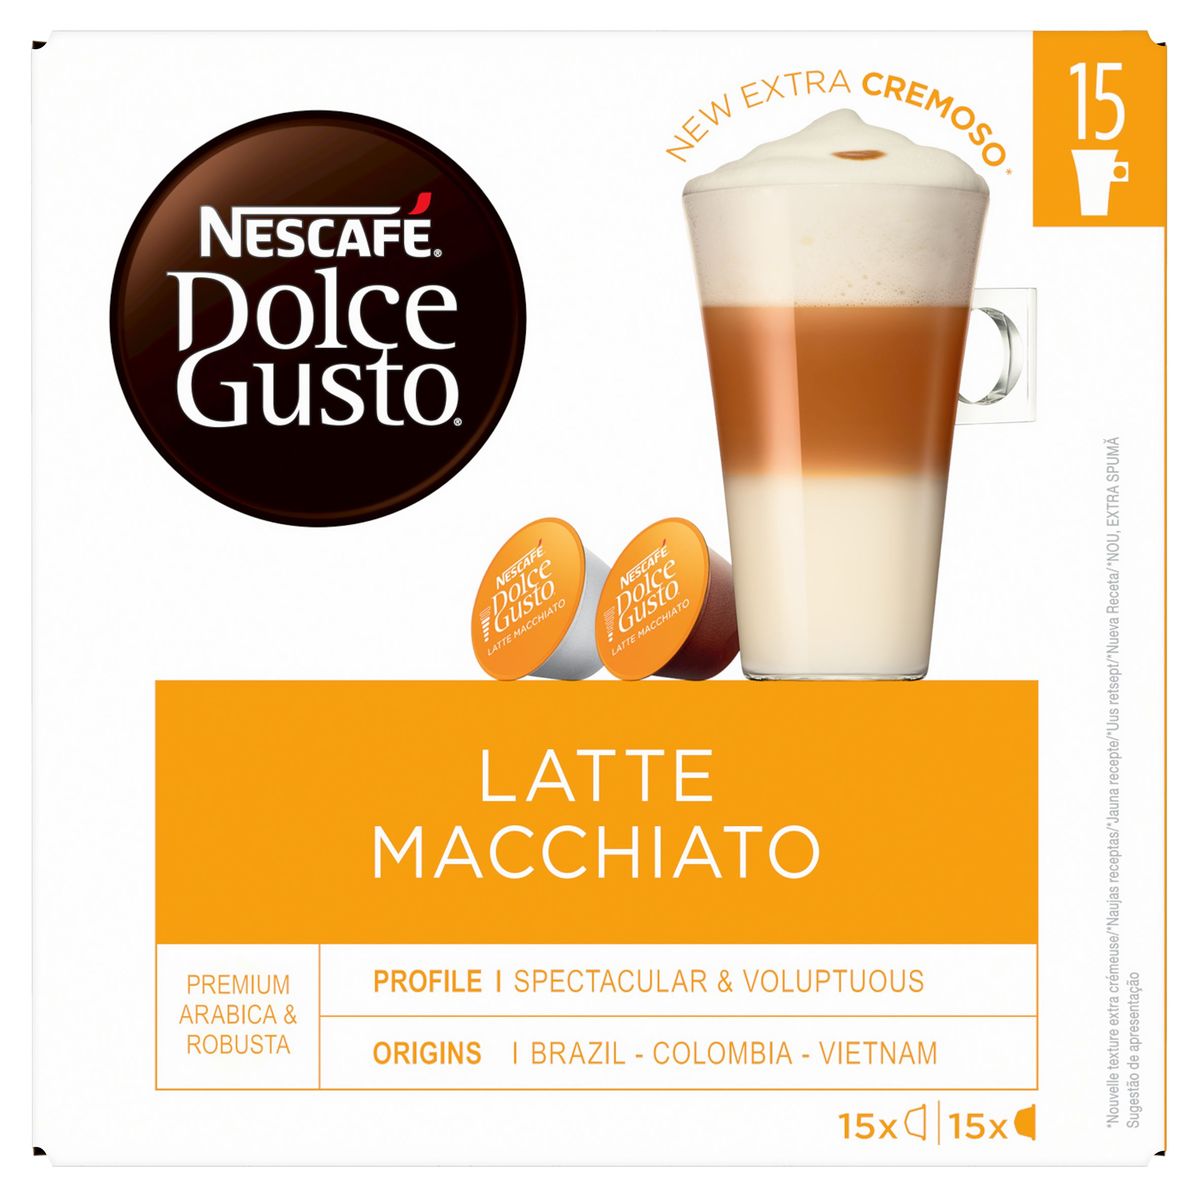 Nescafé Dolce Gusto Latte Macchiato 30 capsules